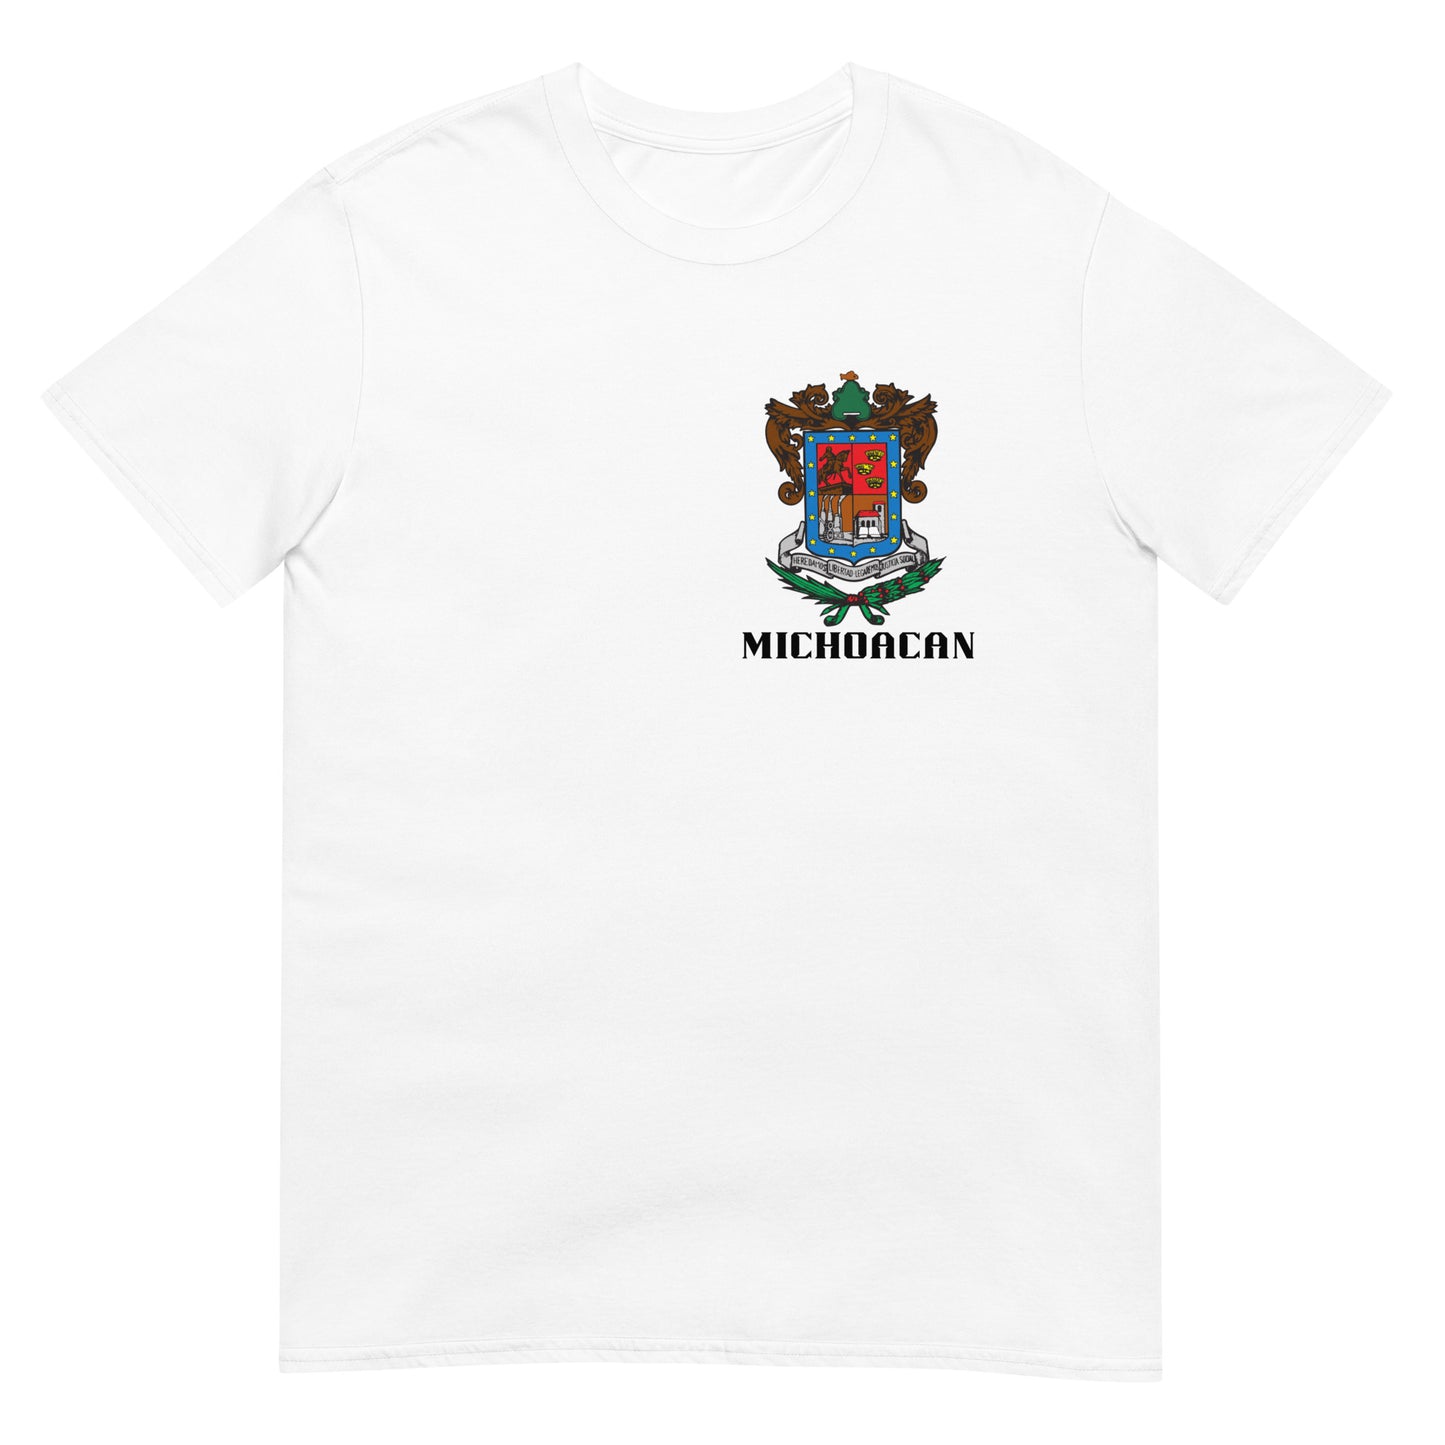 Michoacan- T-Shirt